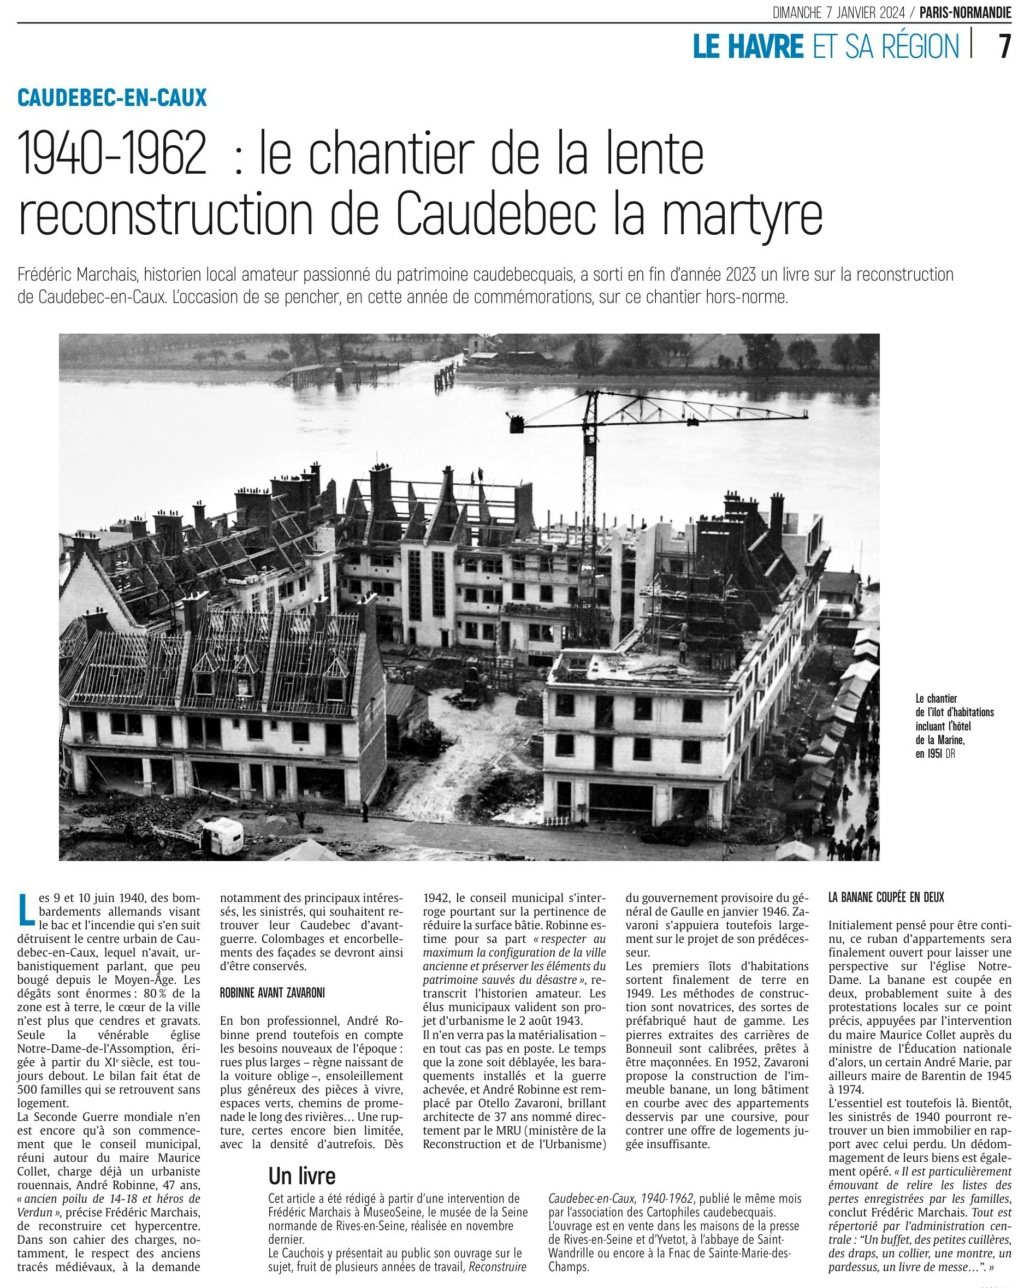 Caudebec-en-Caux - Reconstruction 1940-1962 2024-016